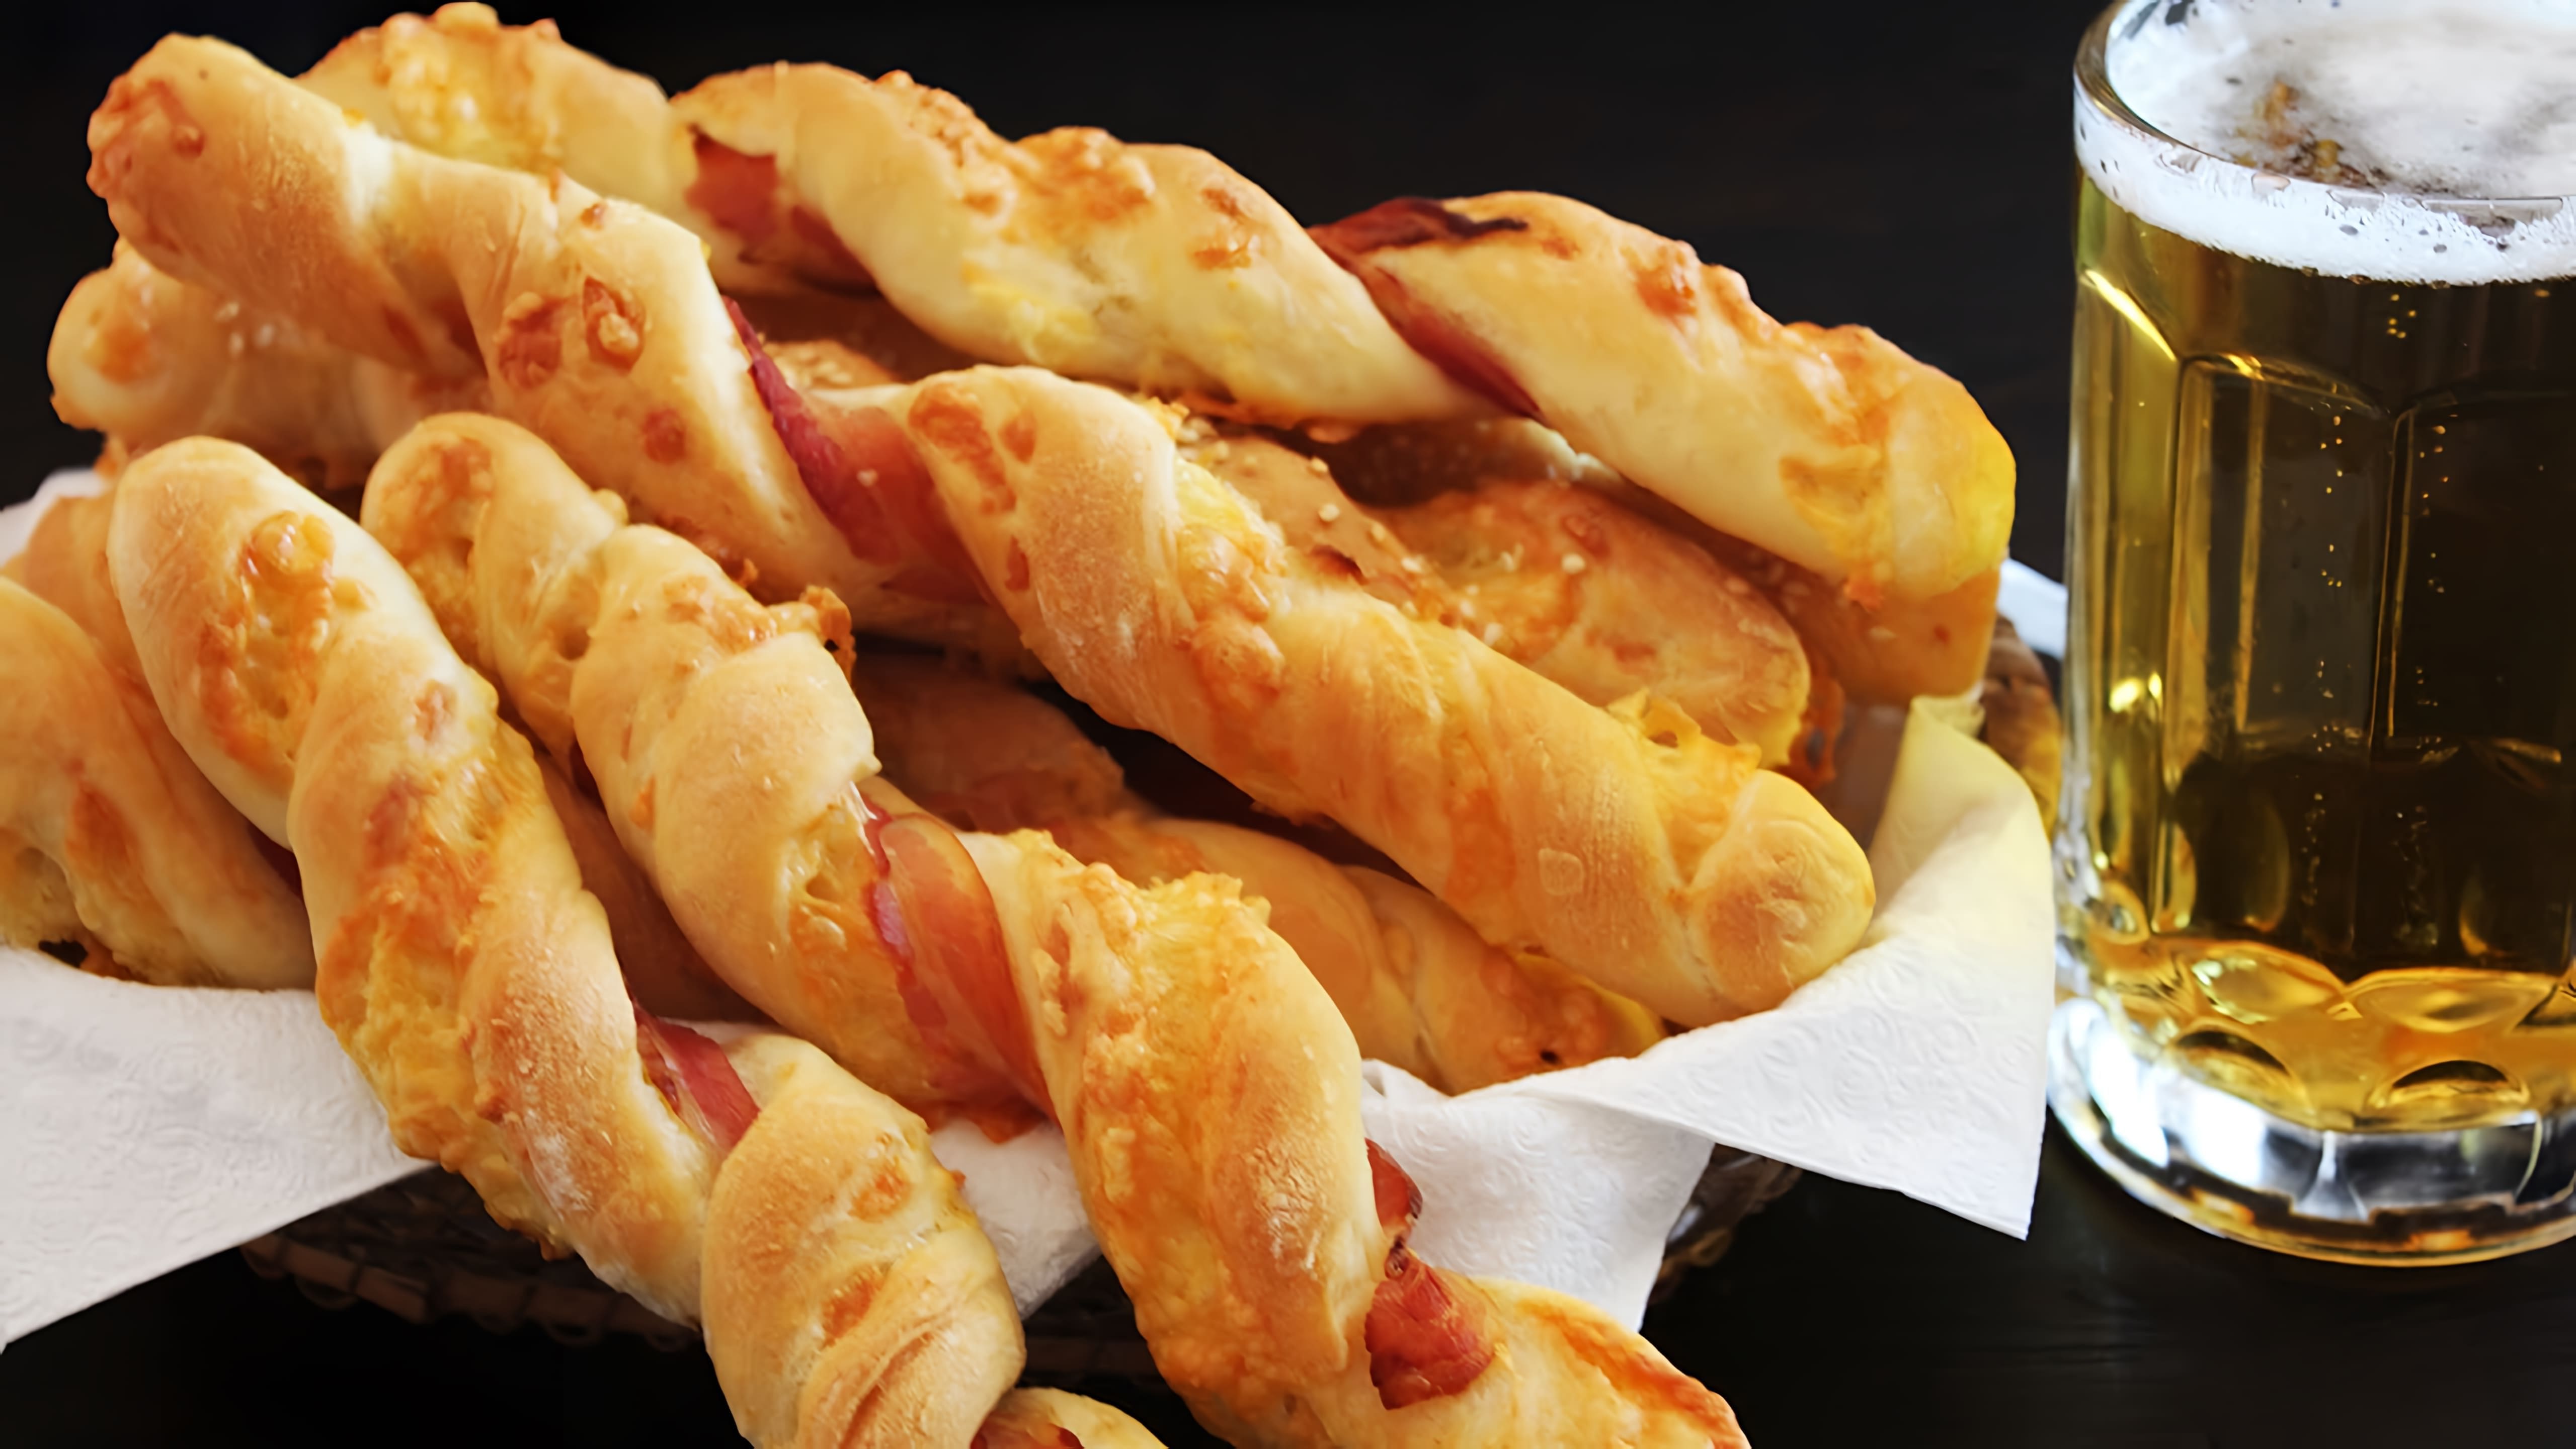 Хлебные палочки с сыром и беконом - это отличная закуска к пиву, которую можно приготовить по рецептам NK cooking